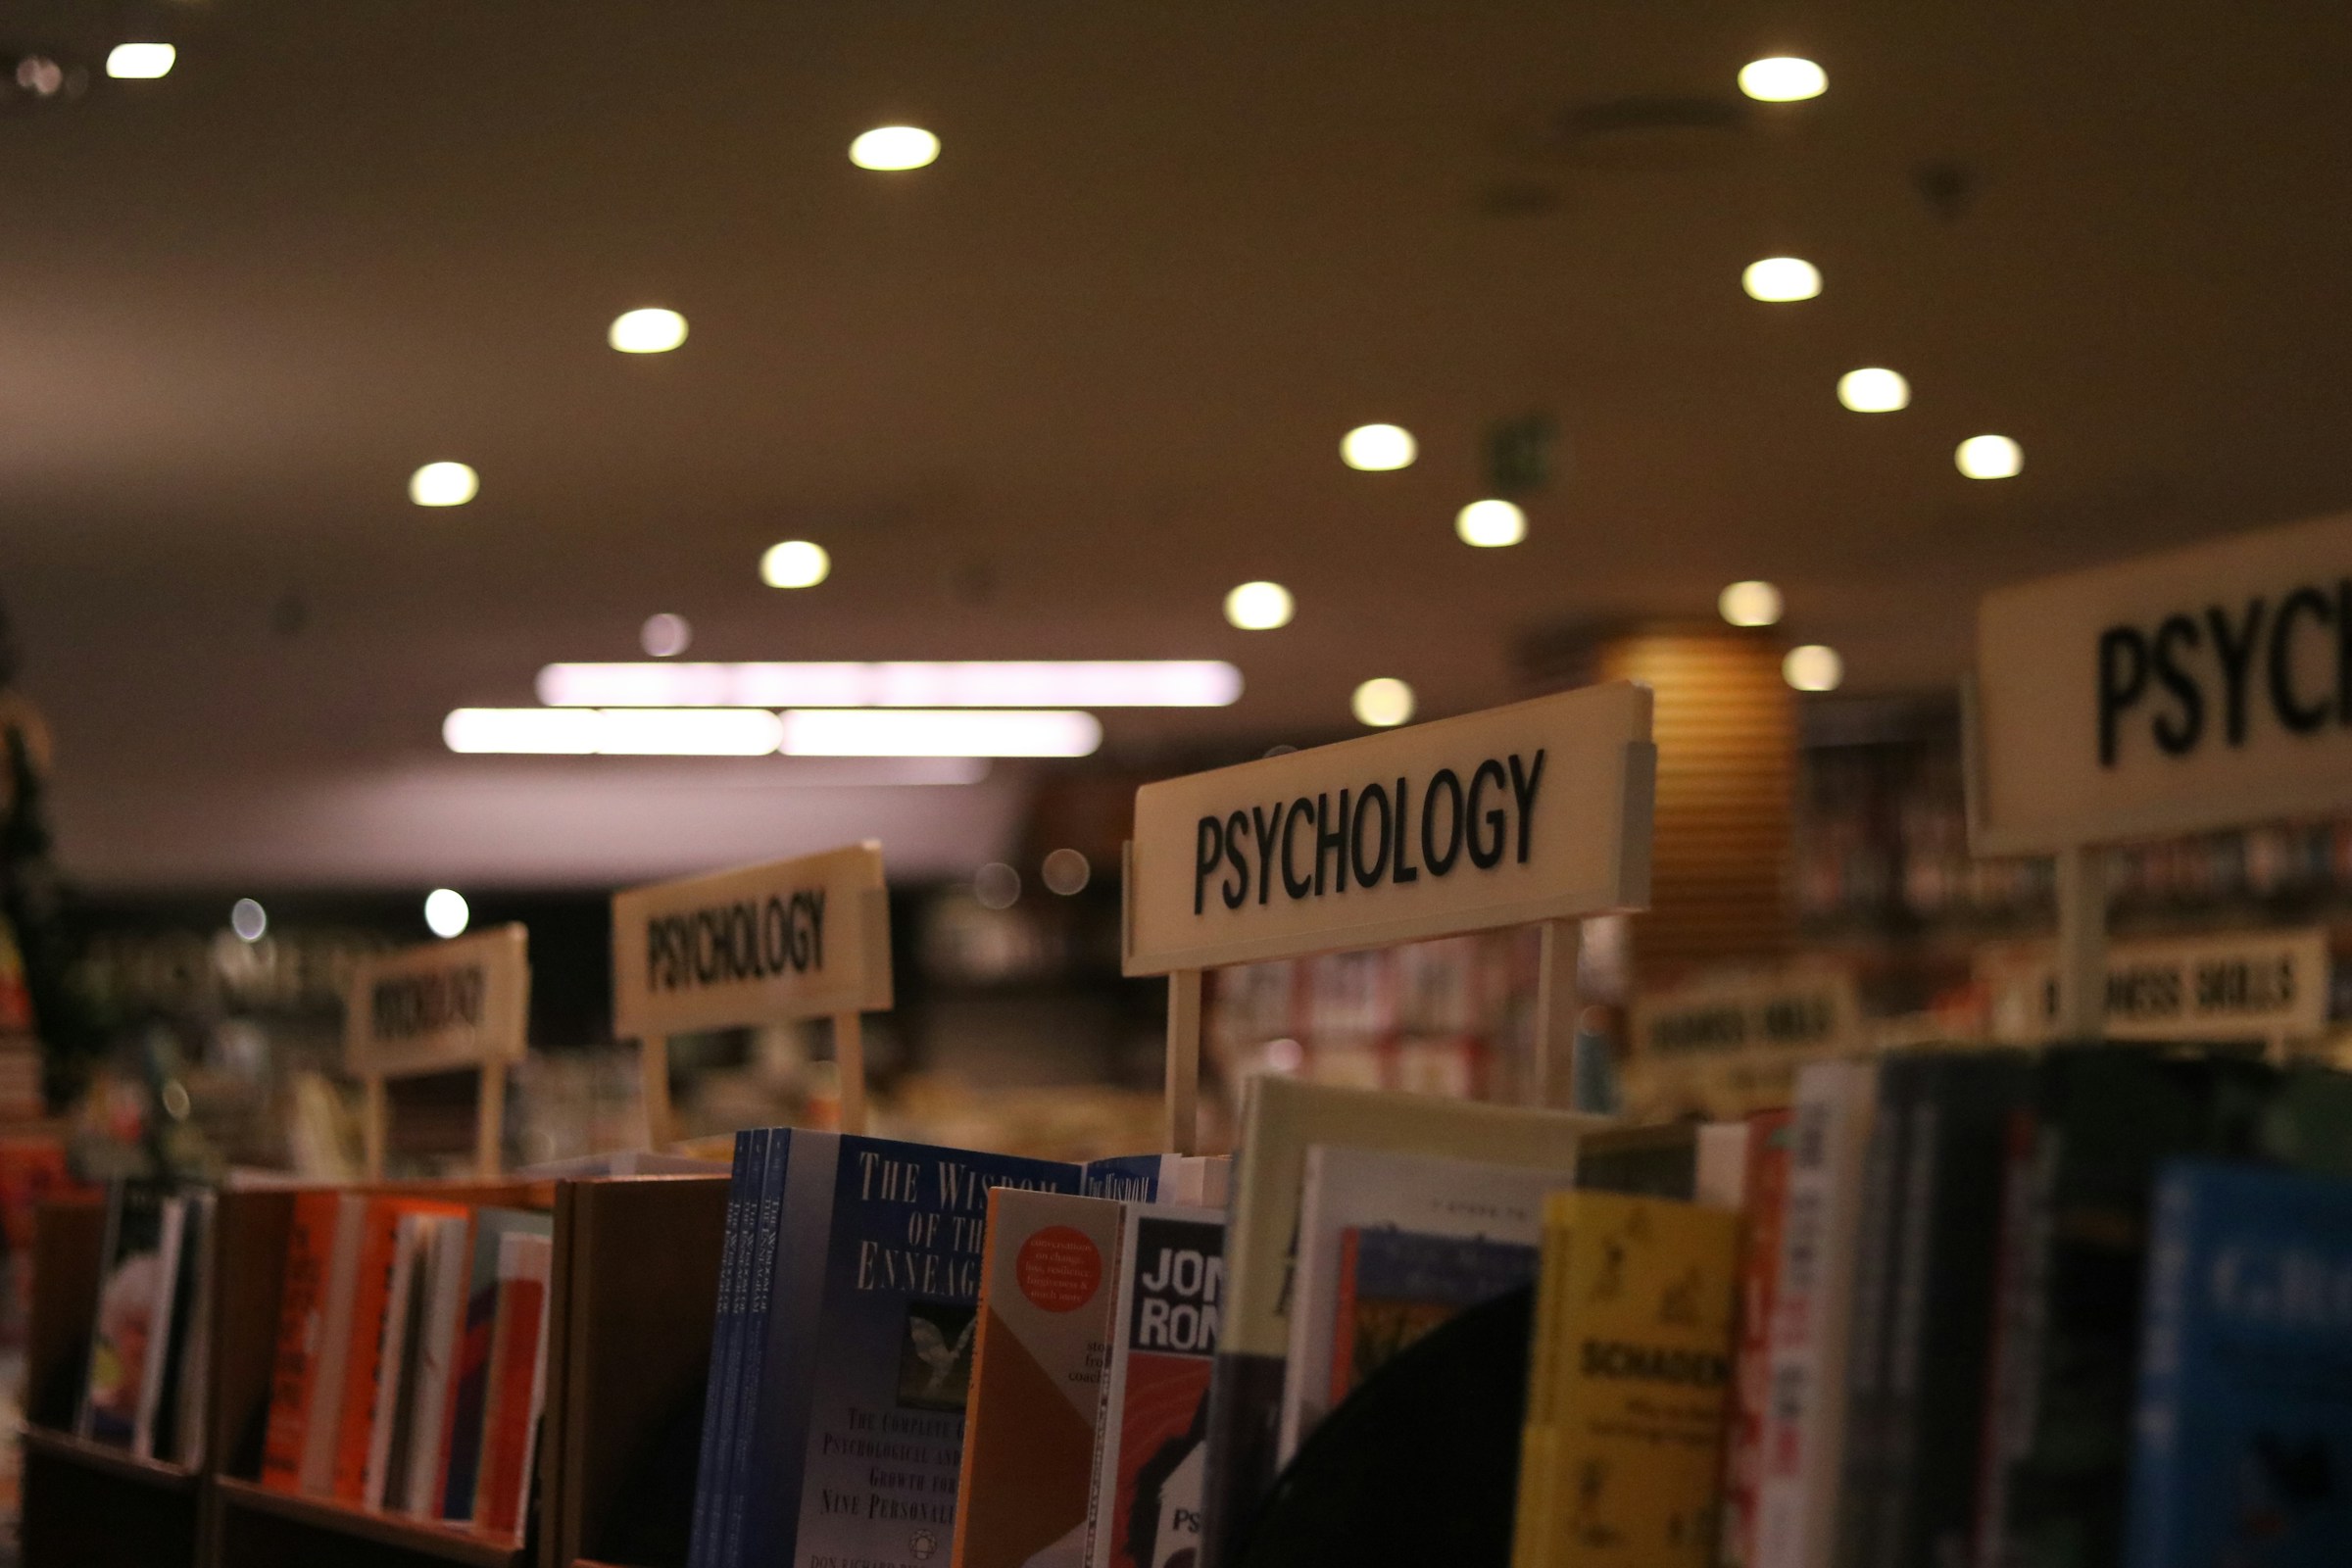 Eine Reihe von Psychologie-Lehrbüchern | Quelle: Unsplash